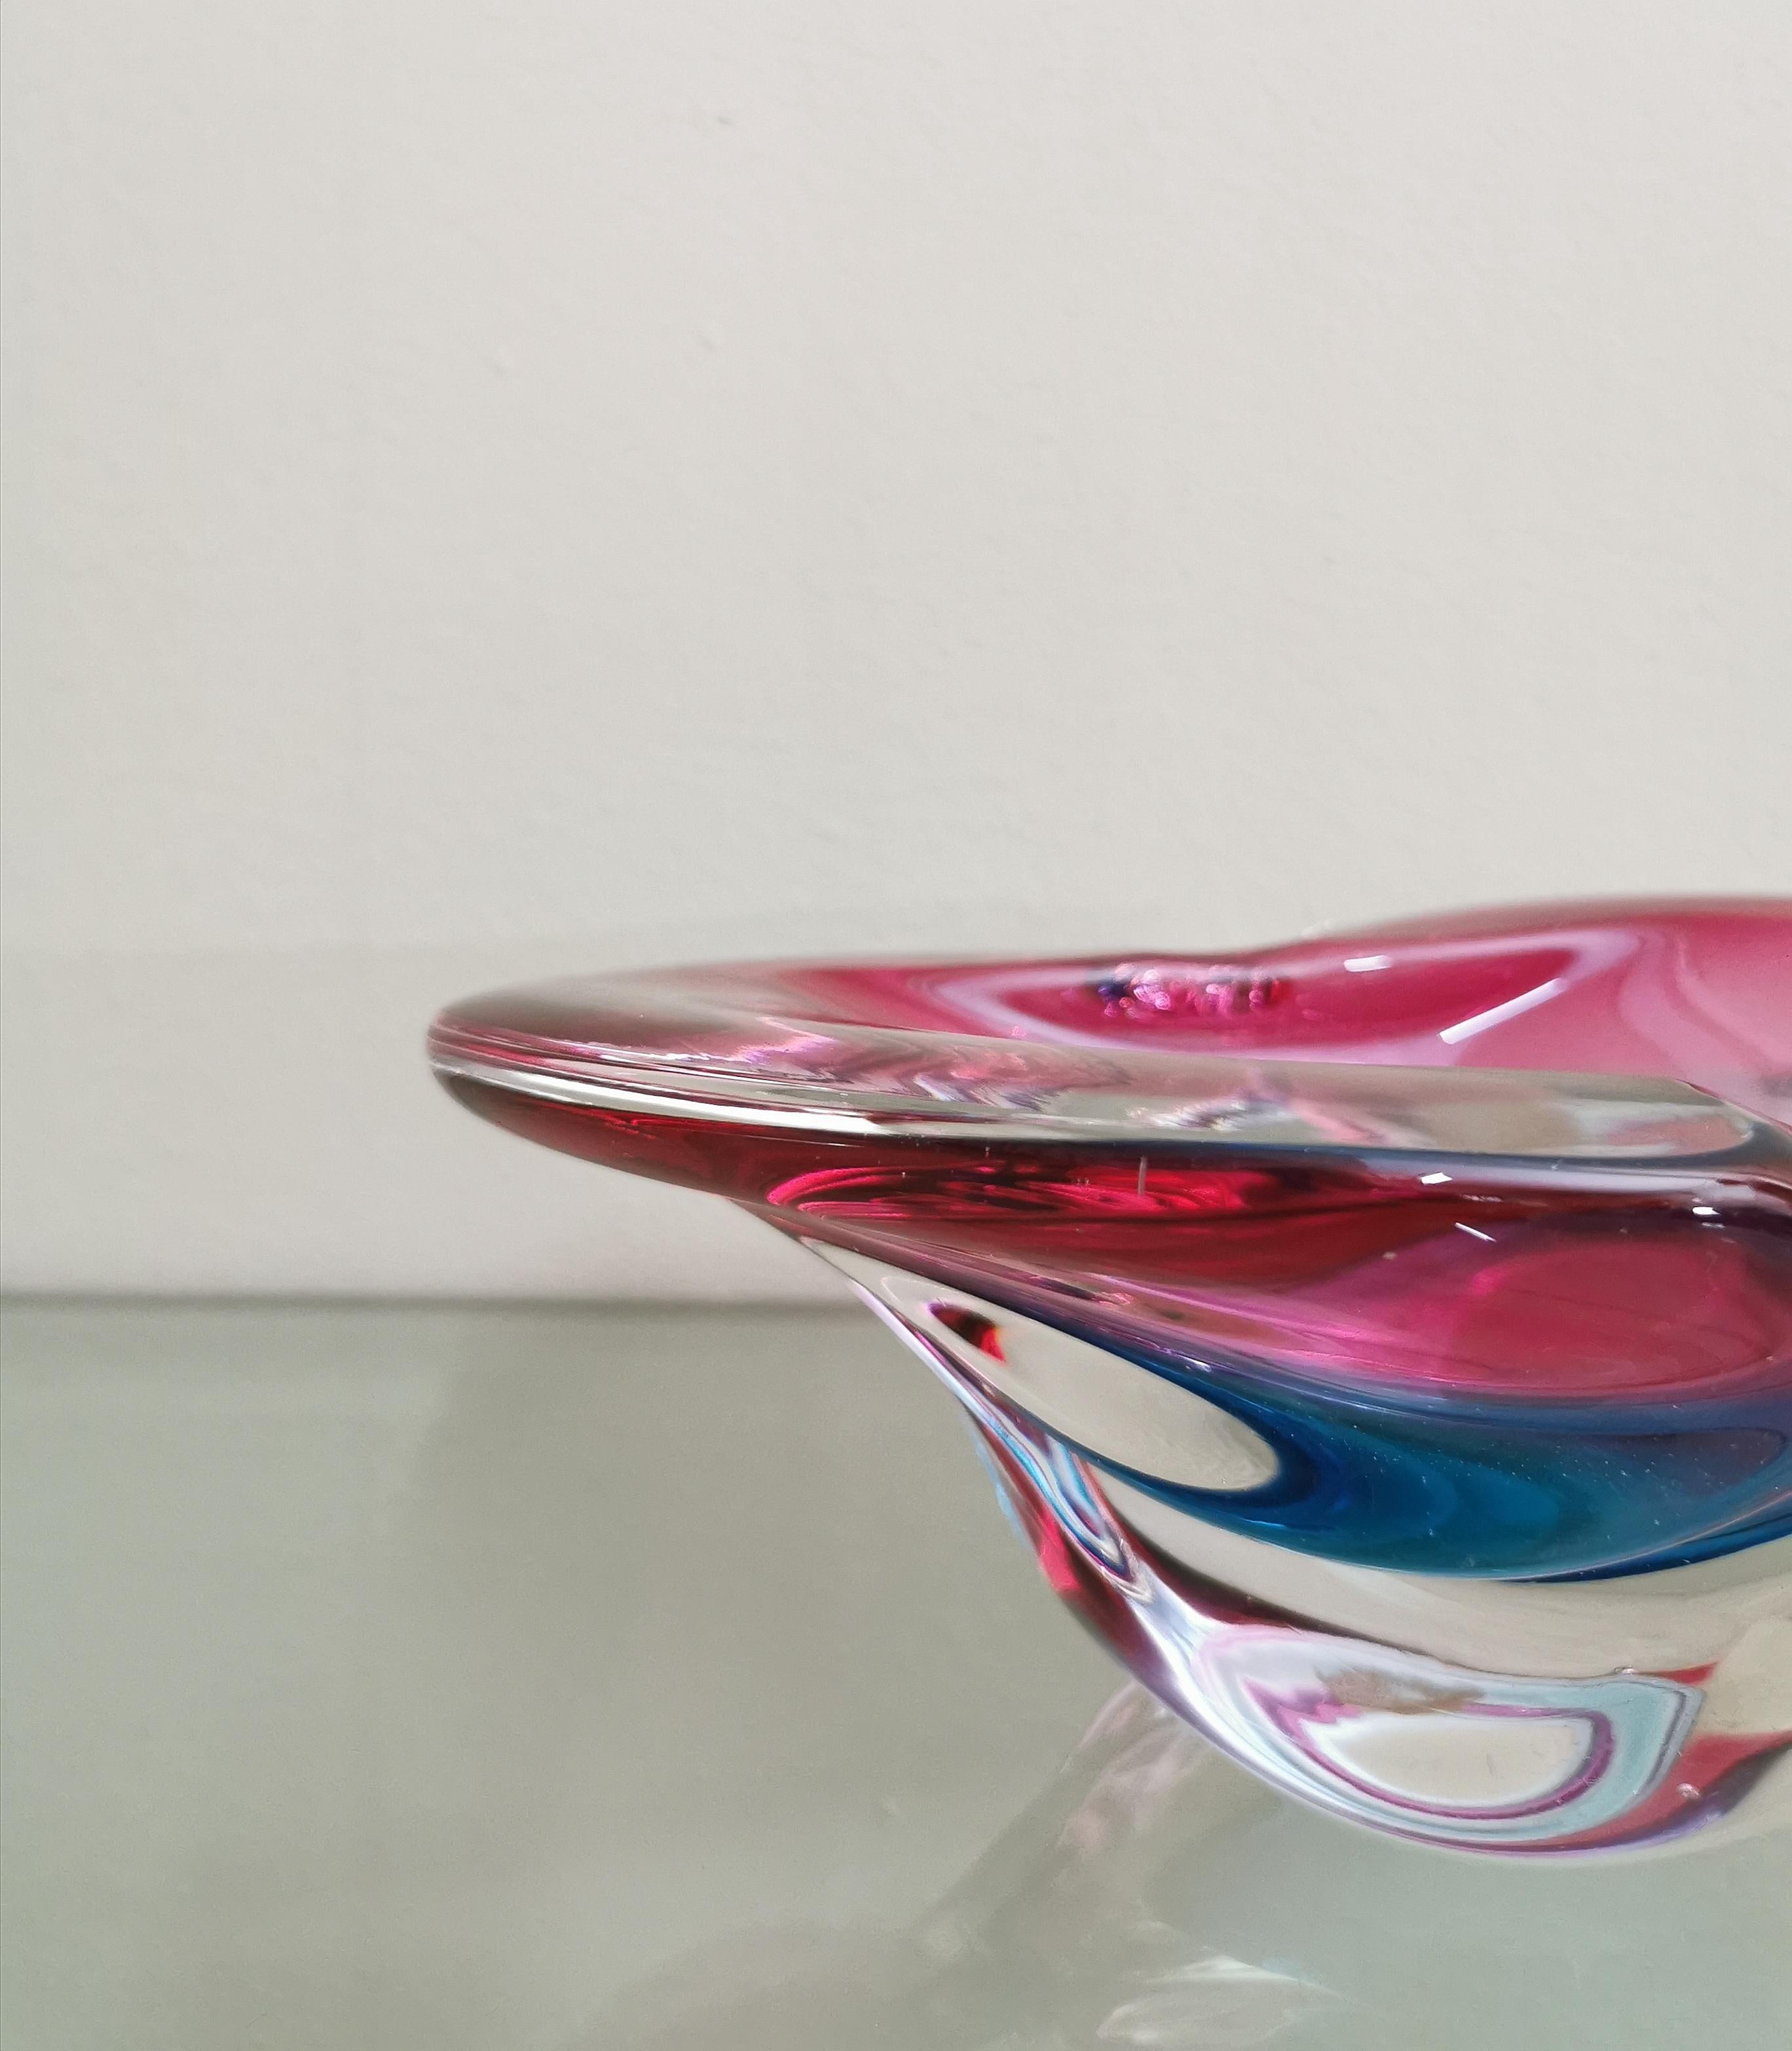 20th Century Murano Glass Vide-Poche Decorative Object Attributed to Flavio Poli Midcentury For Sale